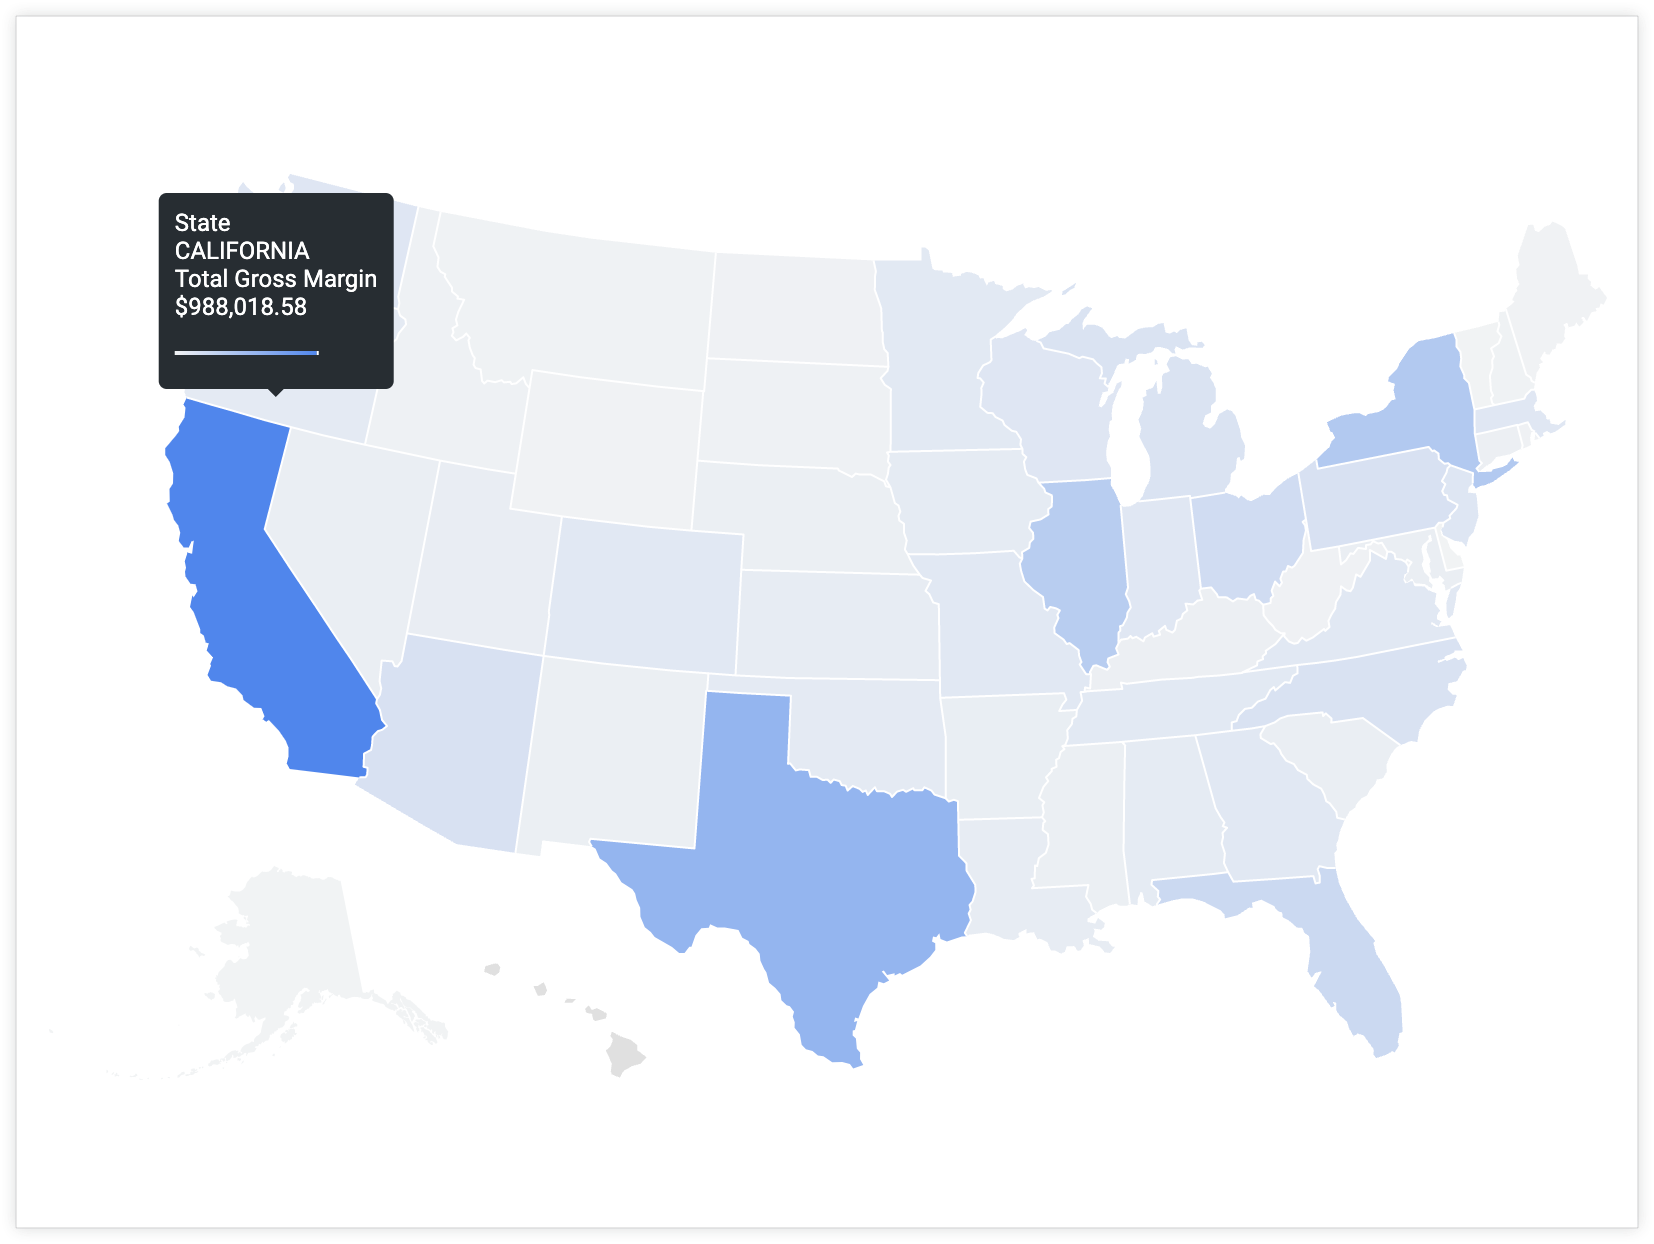 ユーザーがカリフォルニア州にカーソルを合わせると、州の値が「カリフォルニア州」で、合計総利益が「$988,018.58」のツールチップが表示されます。